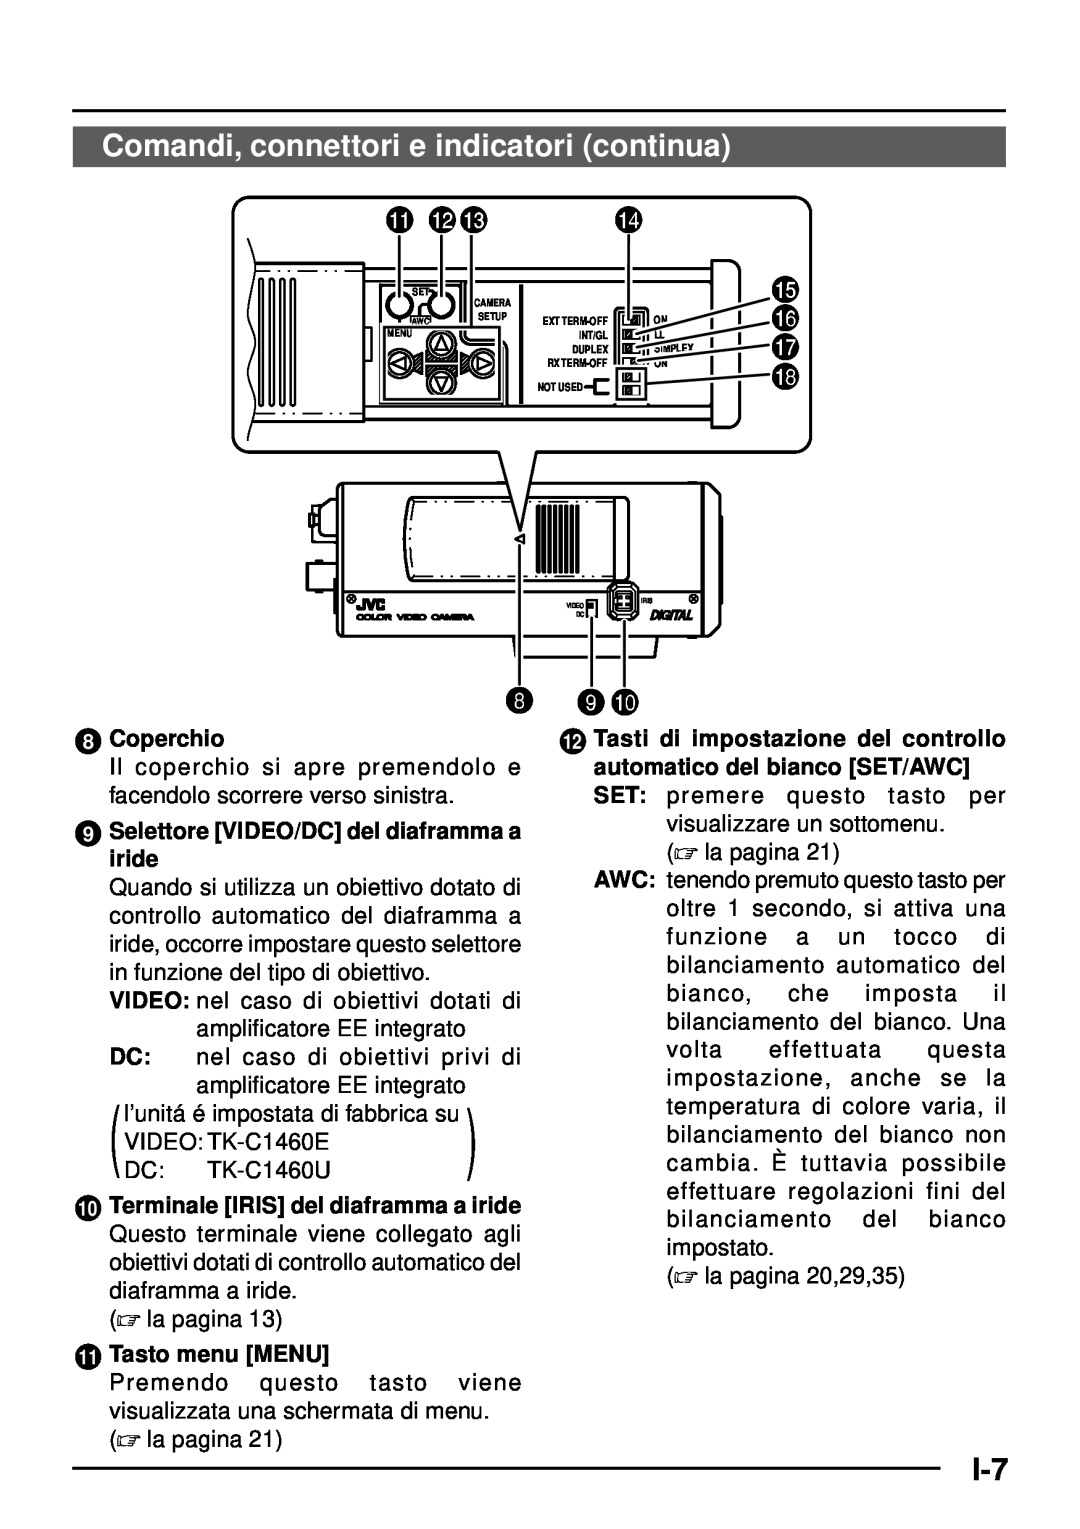 JVC TK-C1460 manual Comandi, connettori e indicatori continua, @# $, Coperchio, Selettore VIDEO/DC del diaframma a iride 